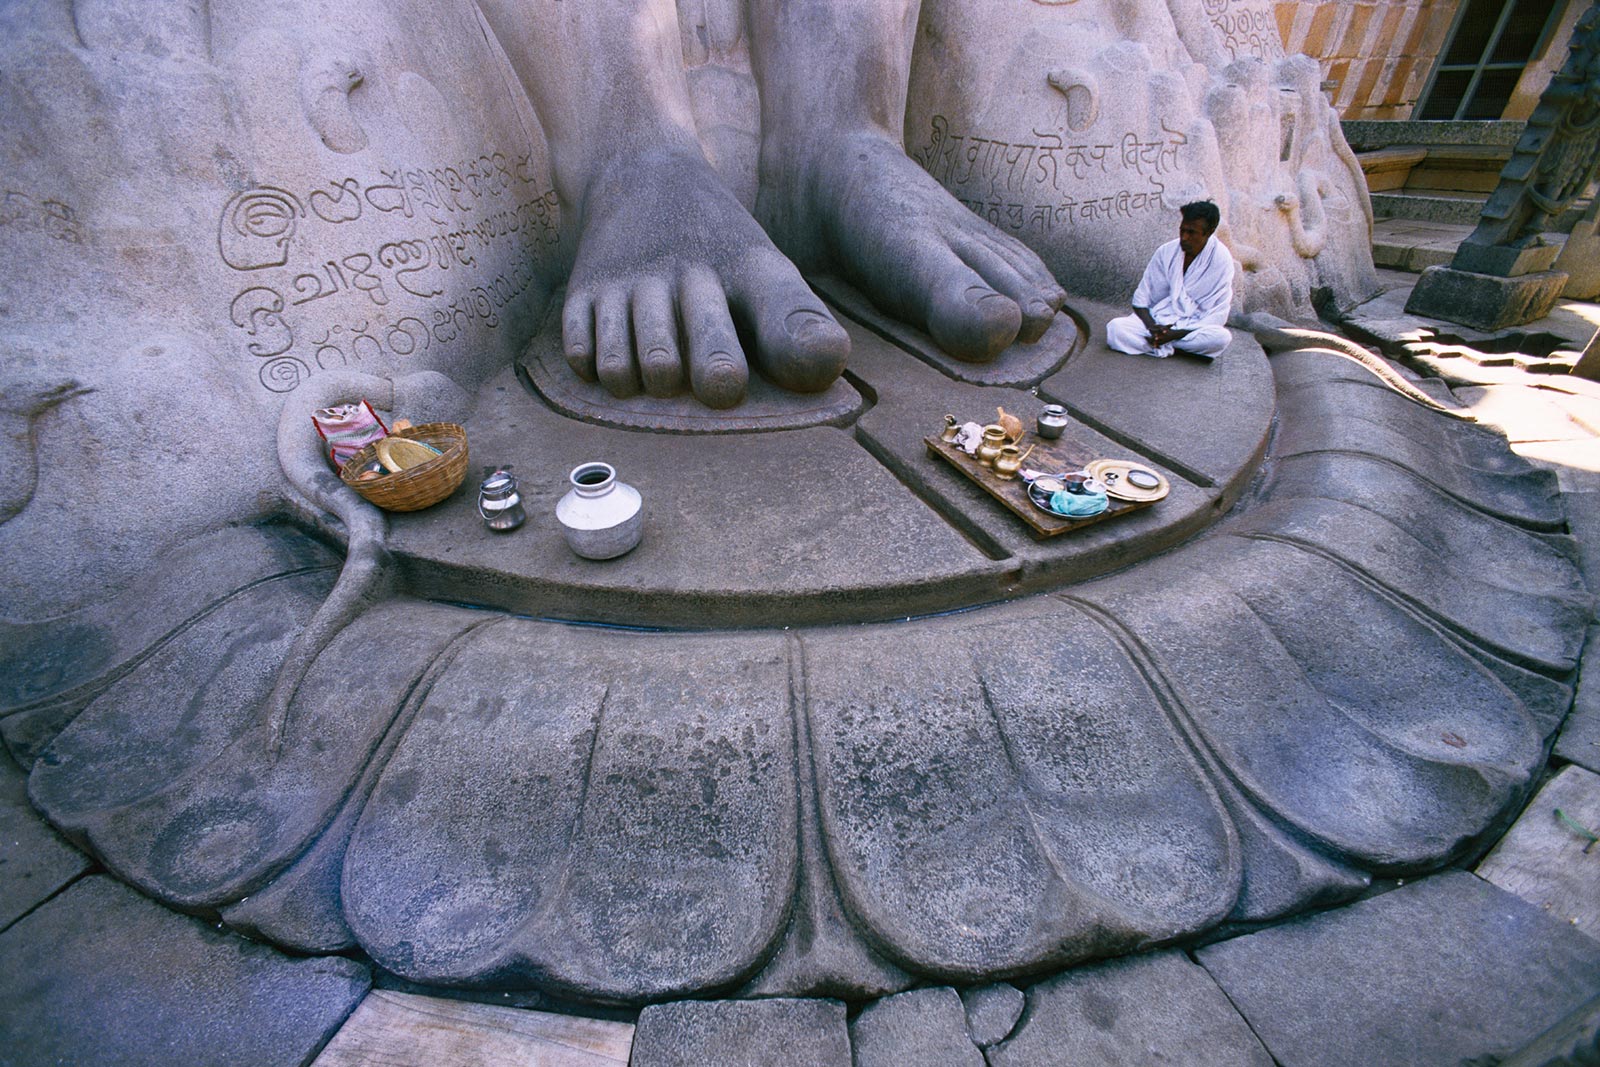 Die heiligen Füße der Statue von Sri Gomatheswar, Shravanabelagola, Indien